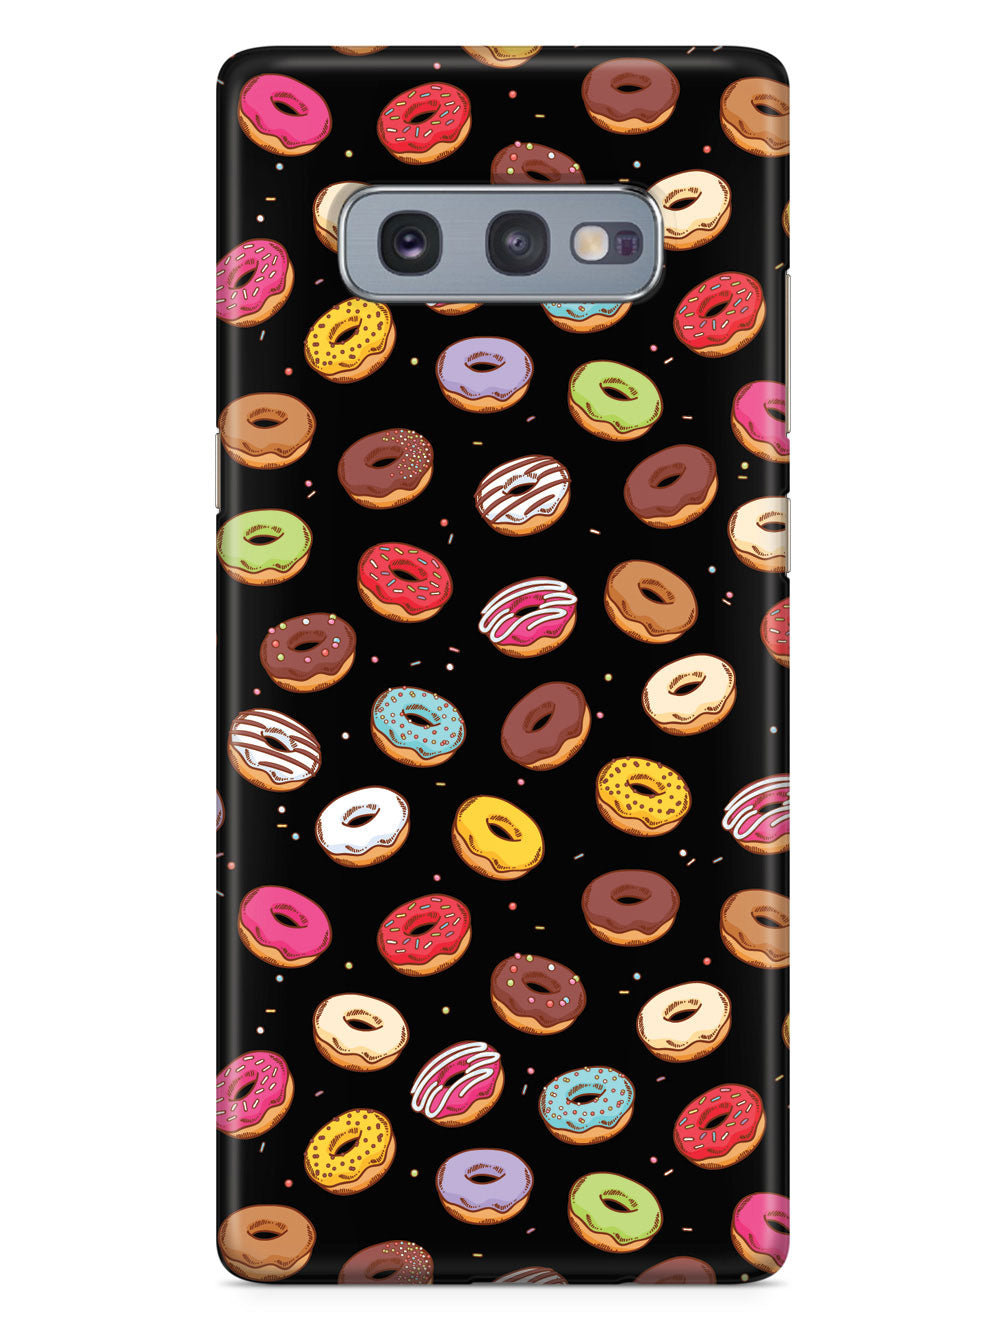 Assorted Doughnuts - Black Case